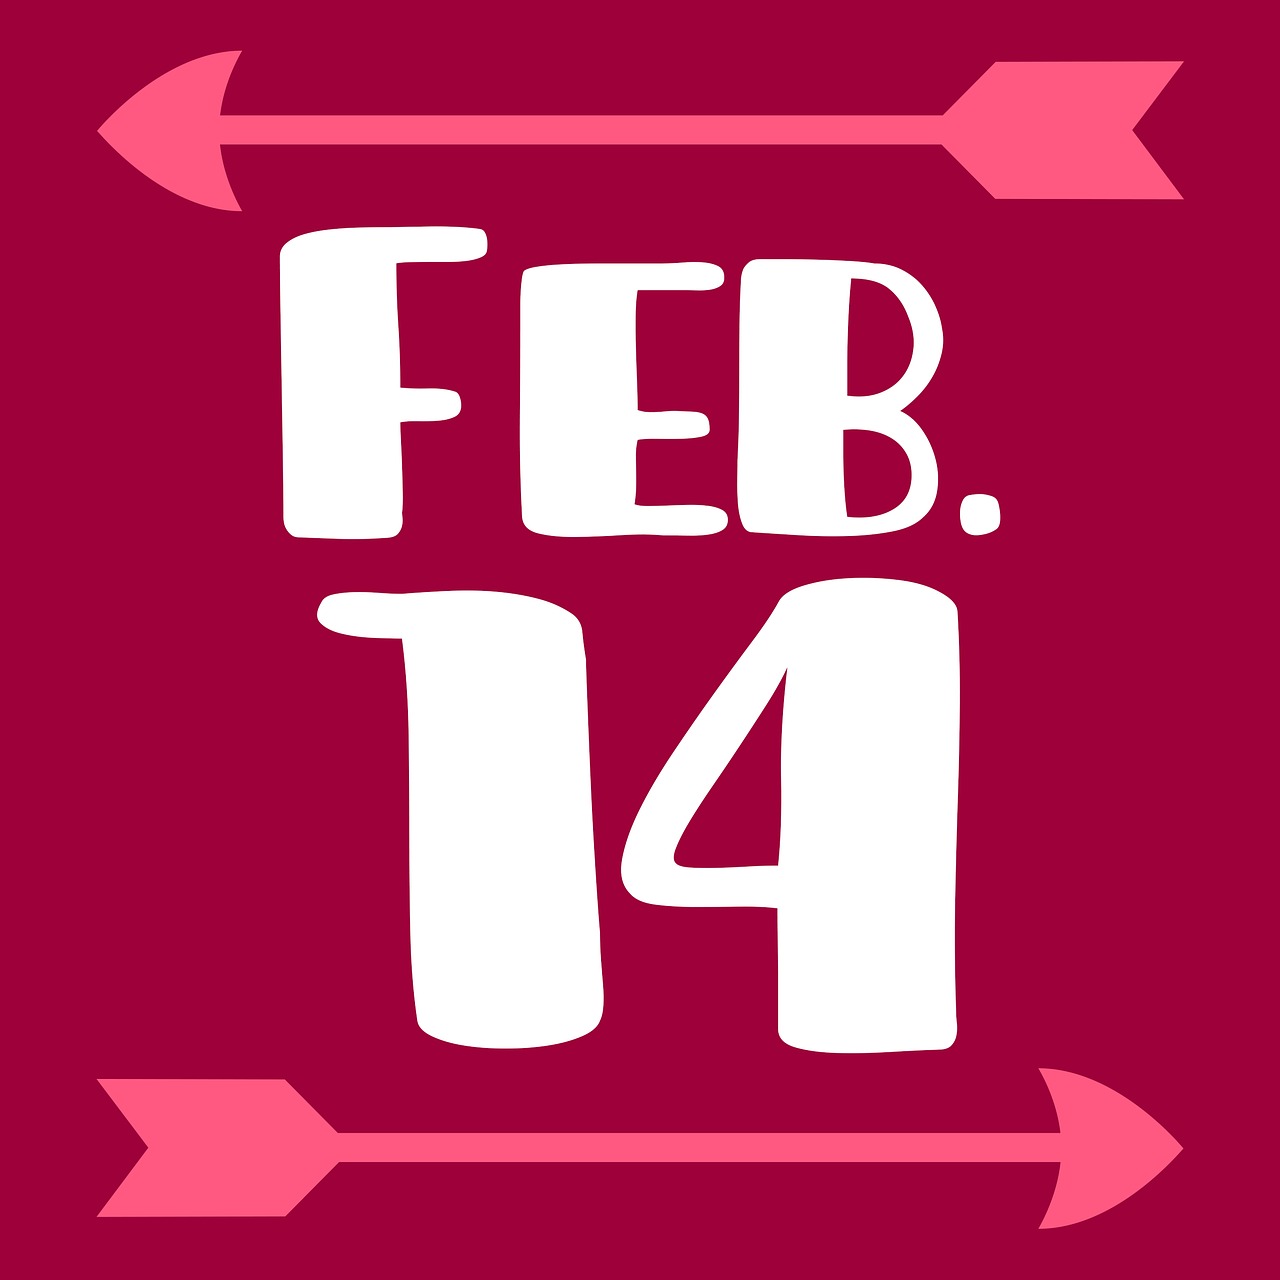 Valentino Diena, Feb, 14, Šventė, Širdis, Saldainiai, Strėlės, Romantiškas, Poros, Pažintys